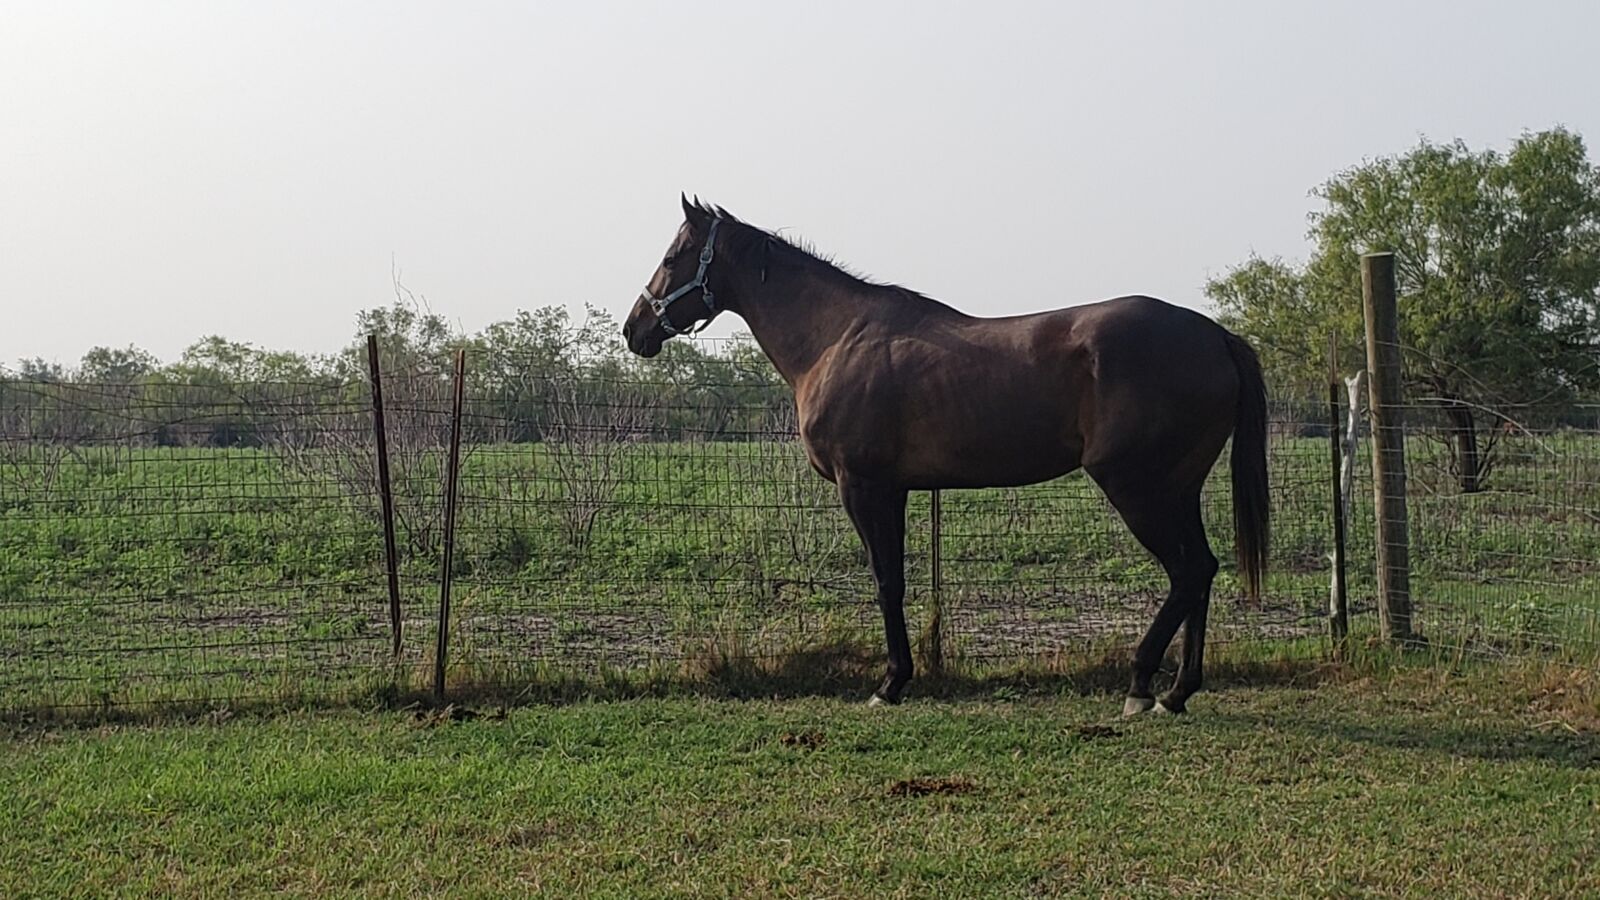 Samsung SM-G960U sample photo. Texas, equestrian, equine photography